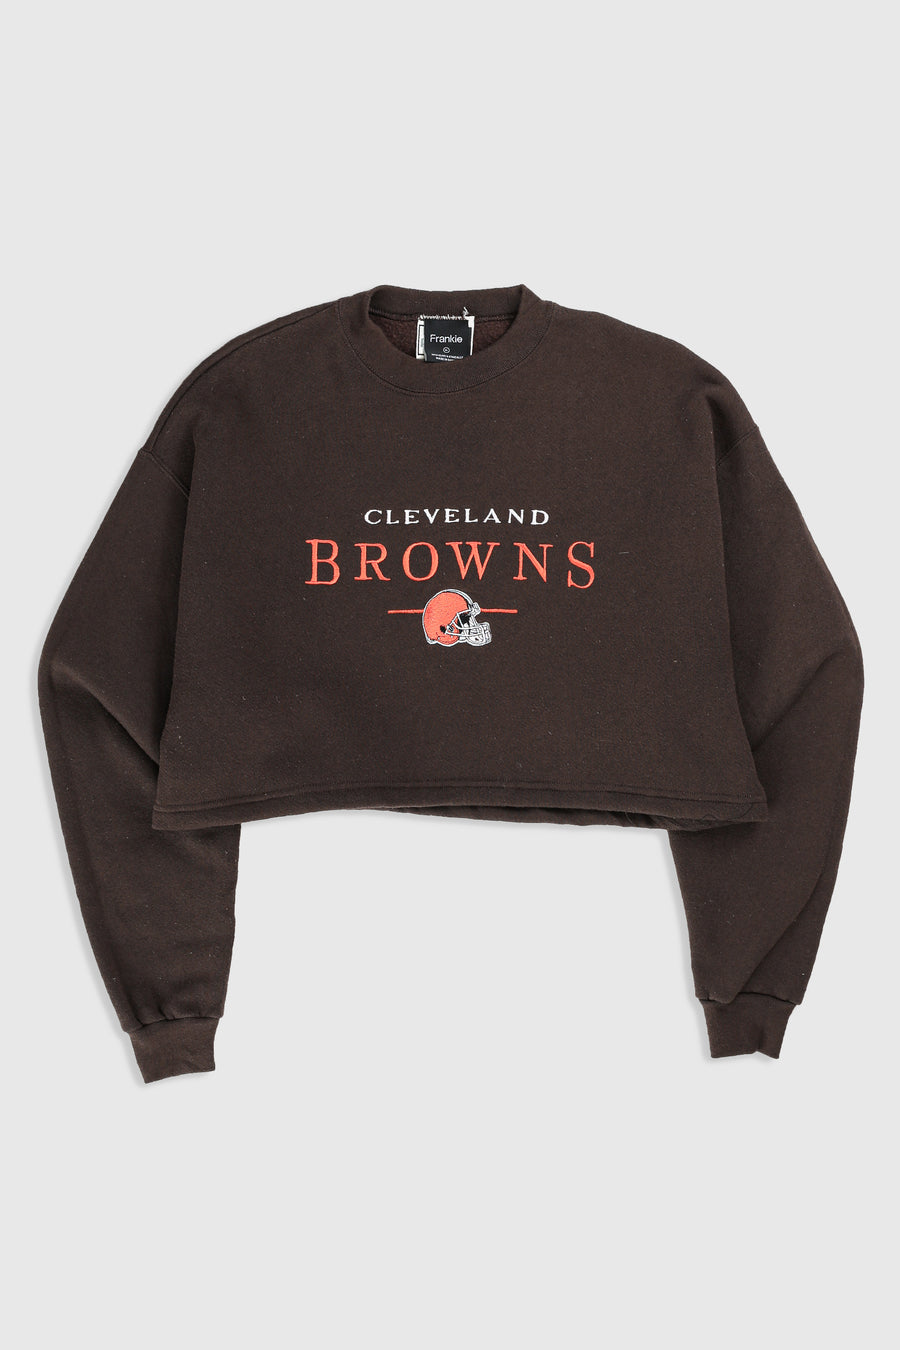 Rework Cleveland Browns Crop Sweatshirt - XL